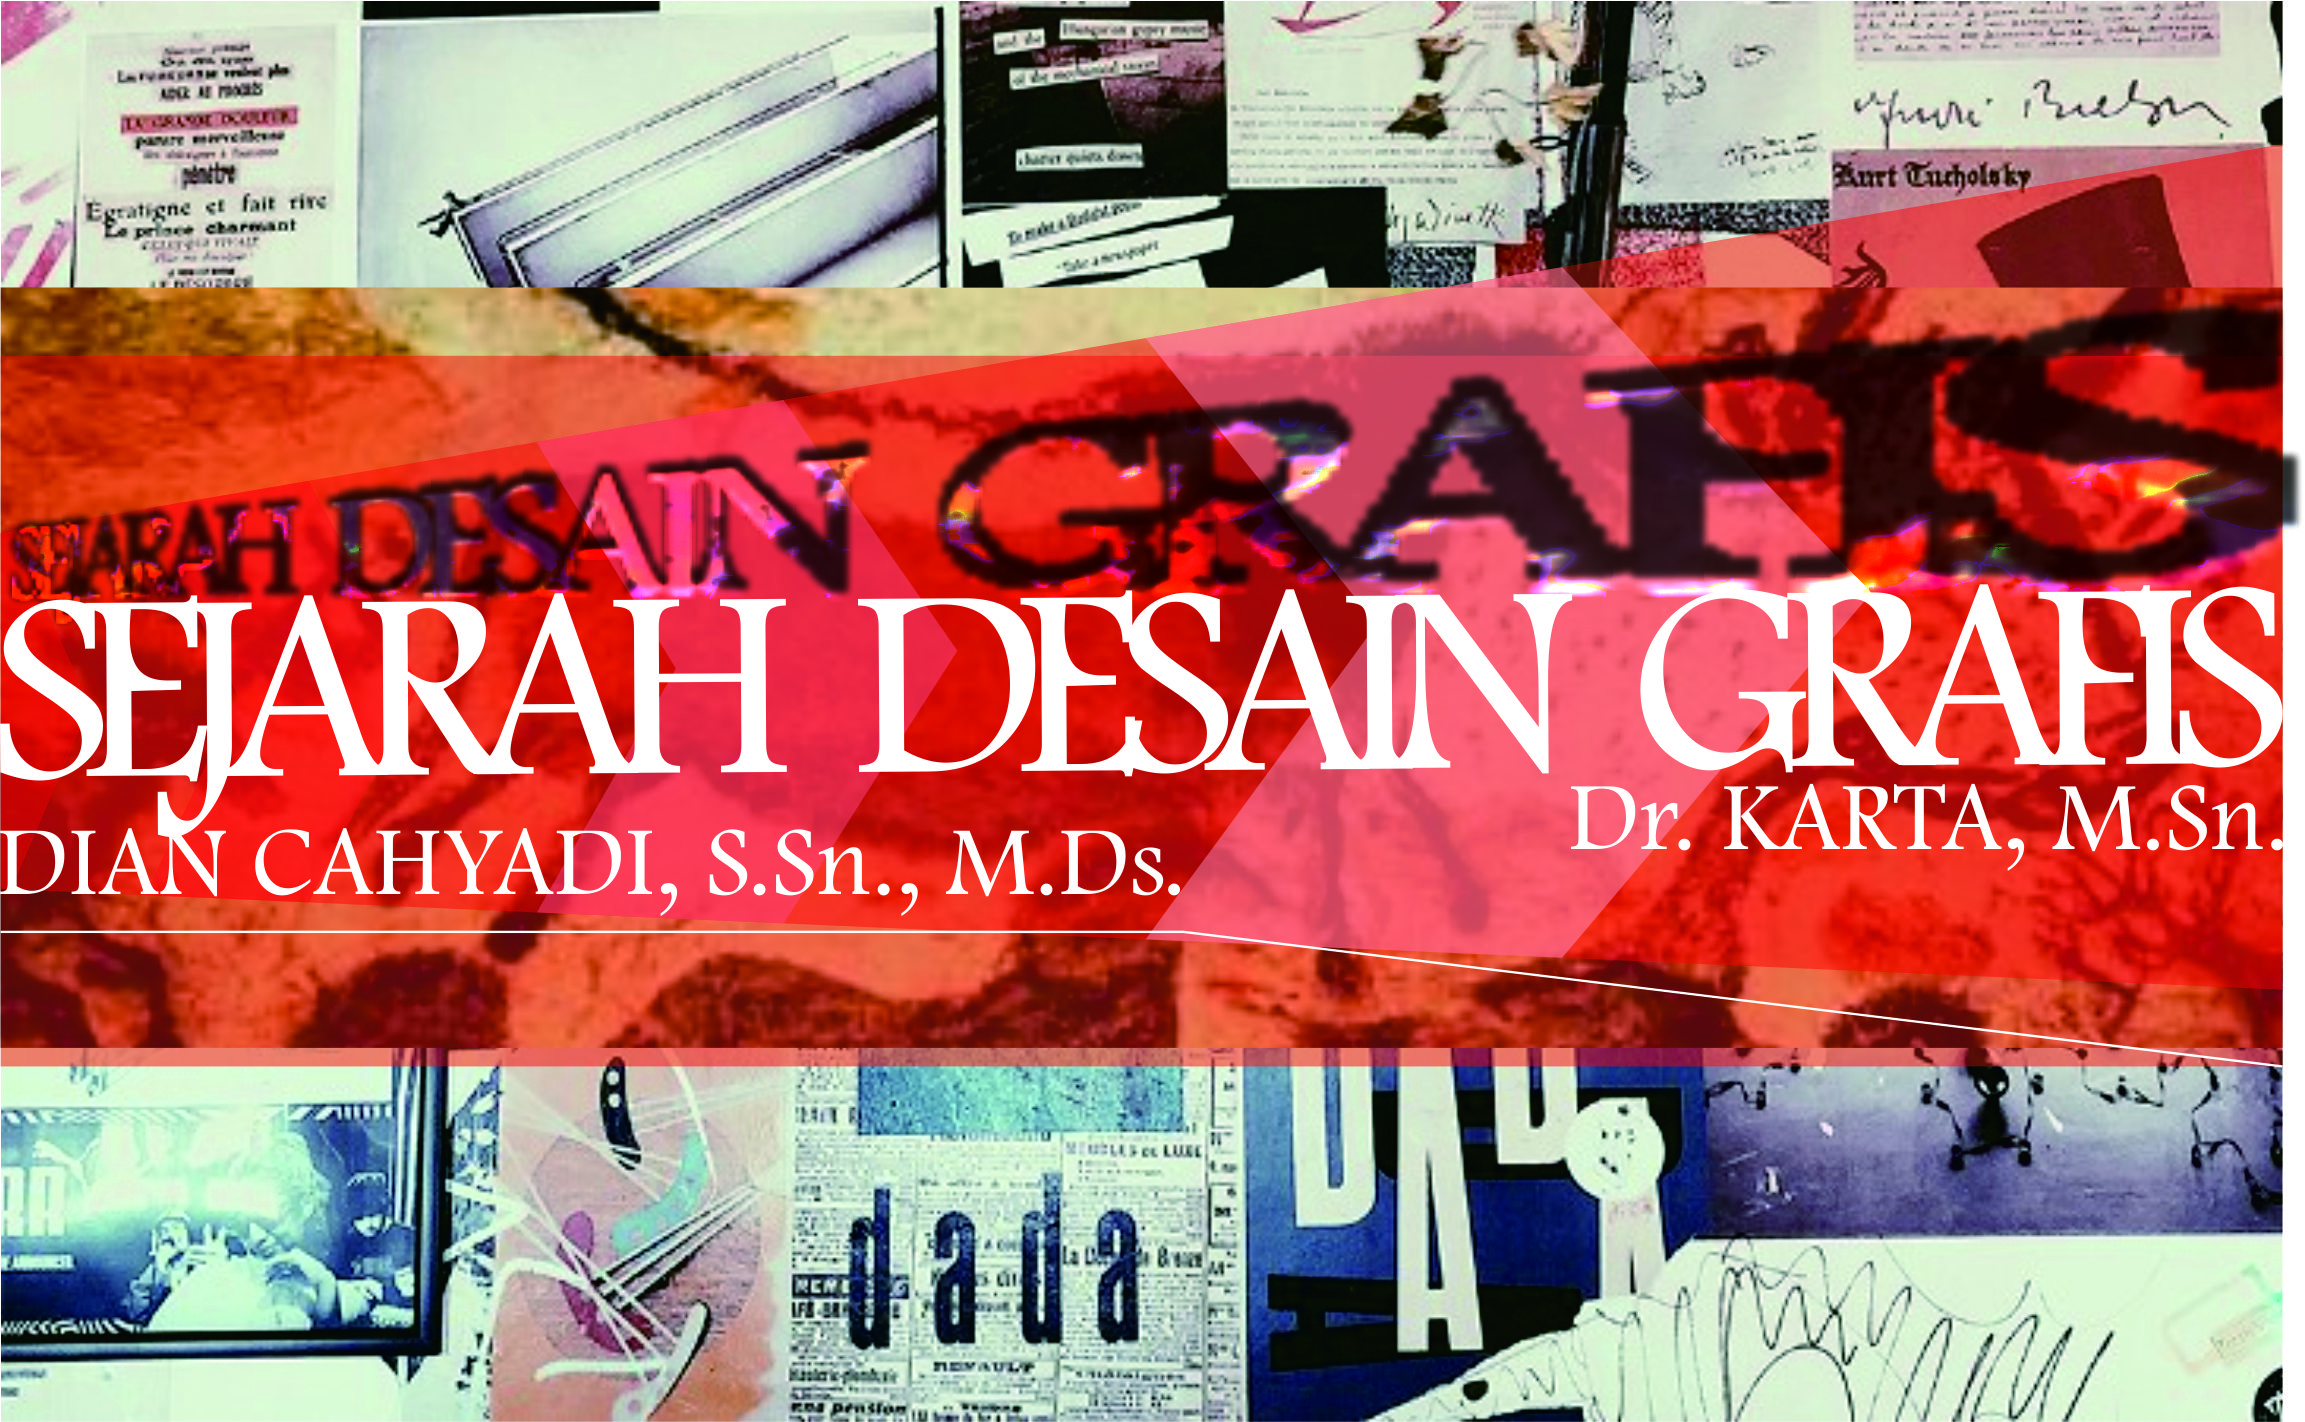 20211-SEJARAH DESAIN GRAFIS copy 1